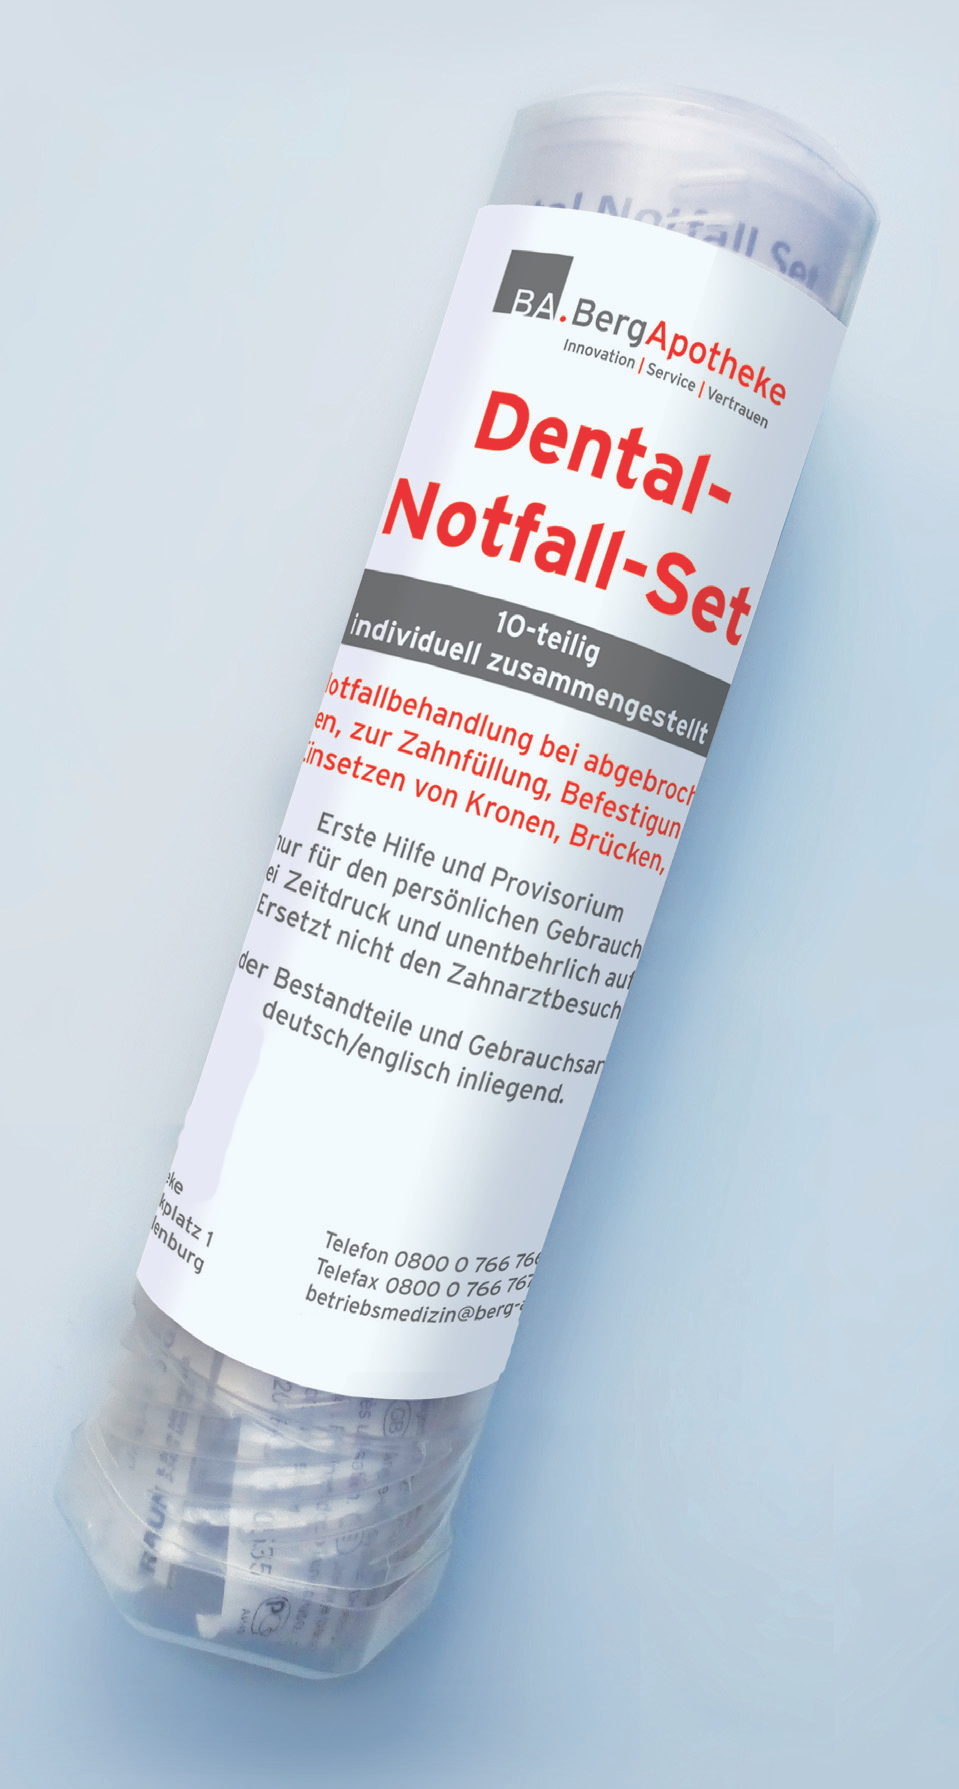 Dental-Notfall-Set